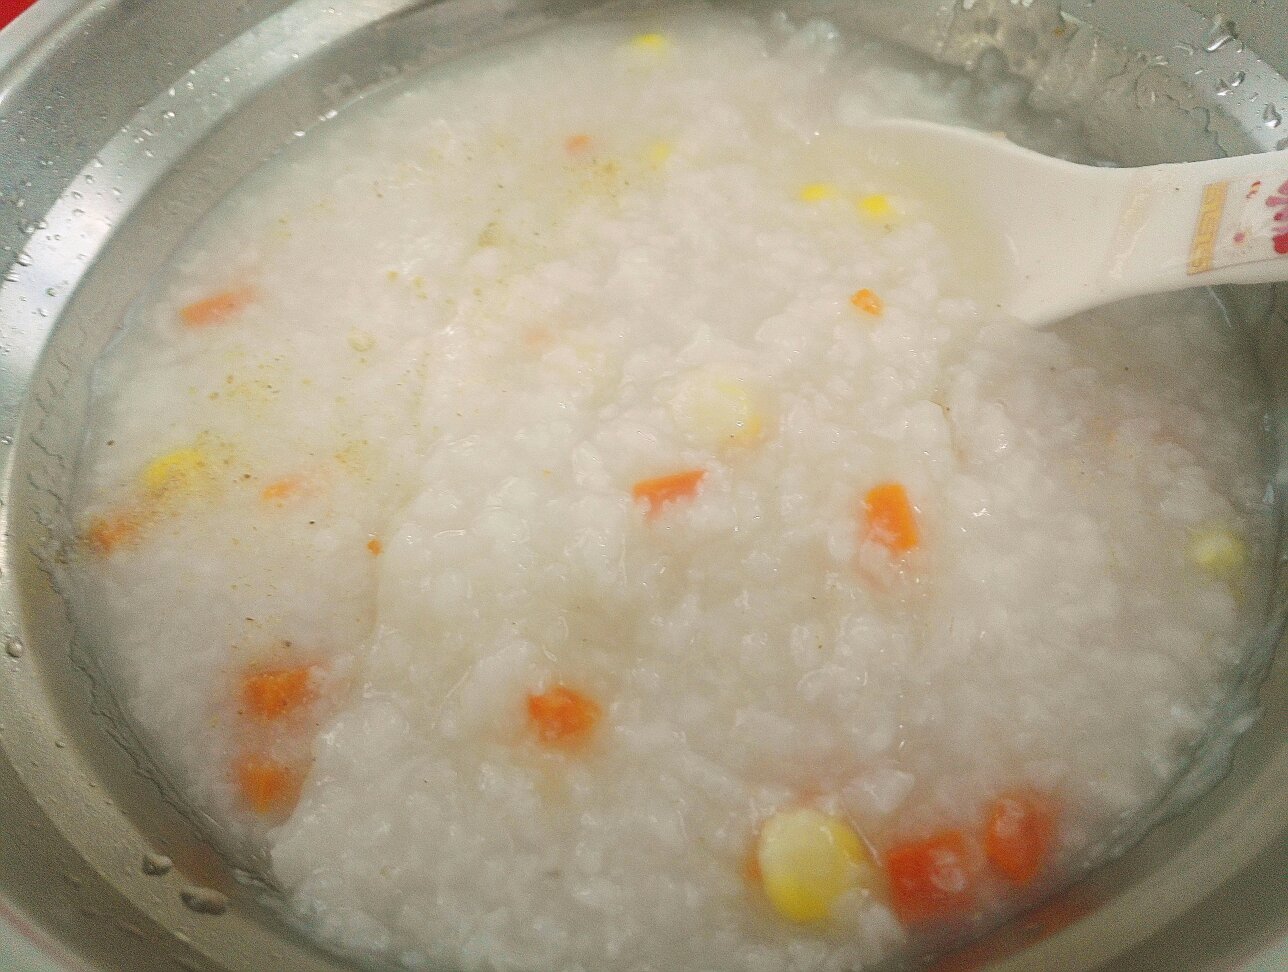 玉米胡萝卜香菇粥